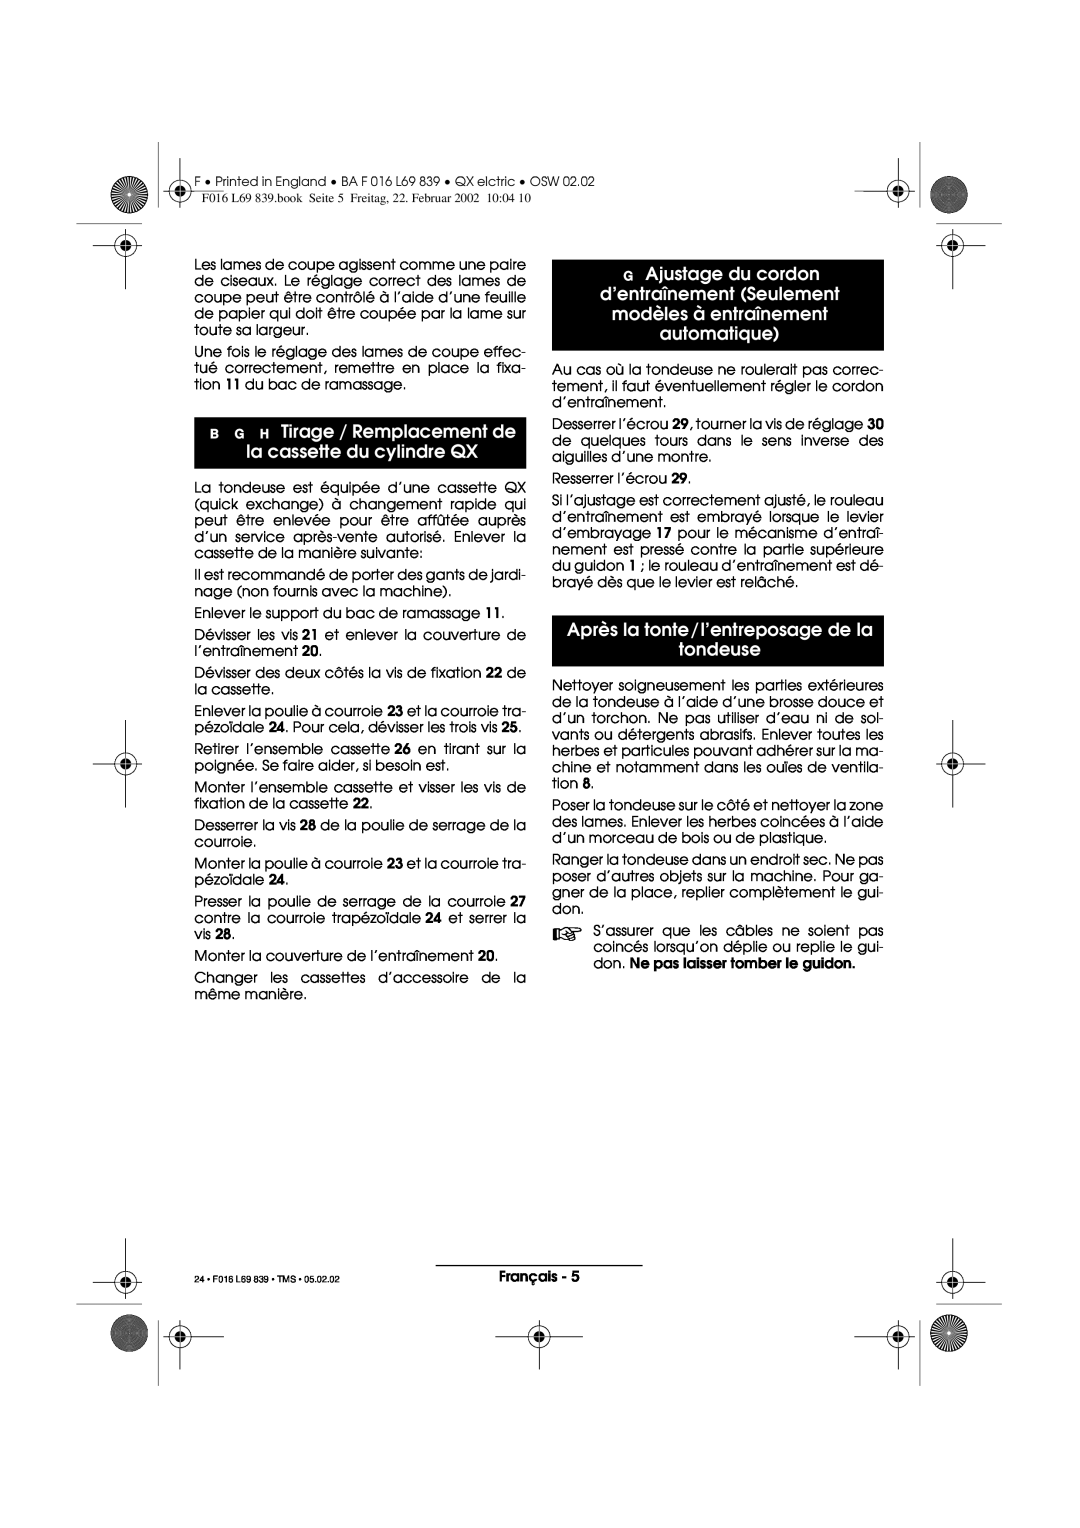 Atco operating instructions B G H Tirage / Remplacement de la cassette du cylindre QX, automatique, 24 F016 L69 839 TMS 